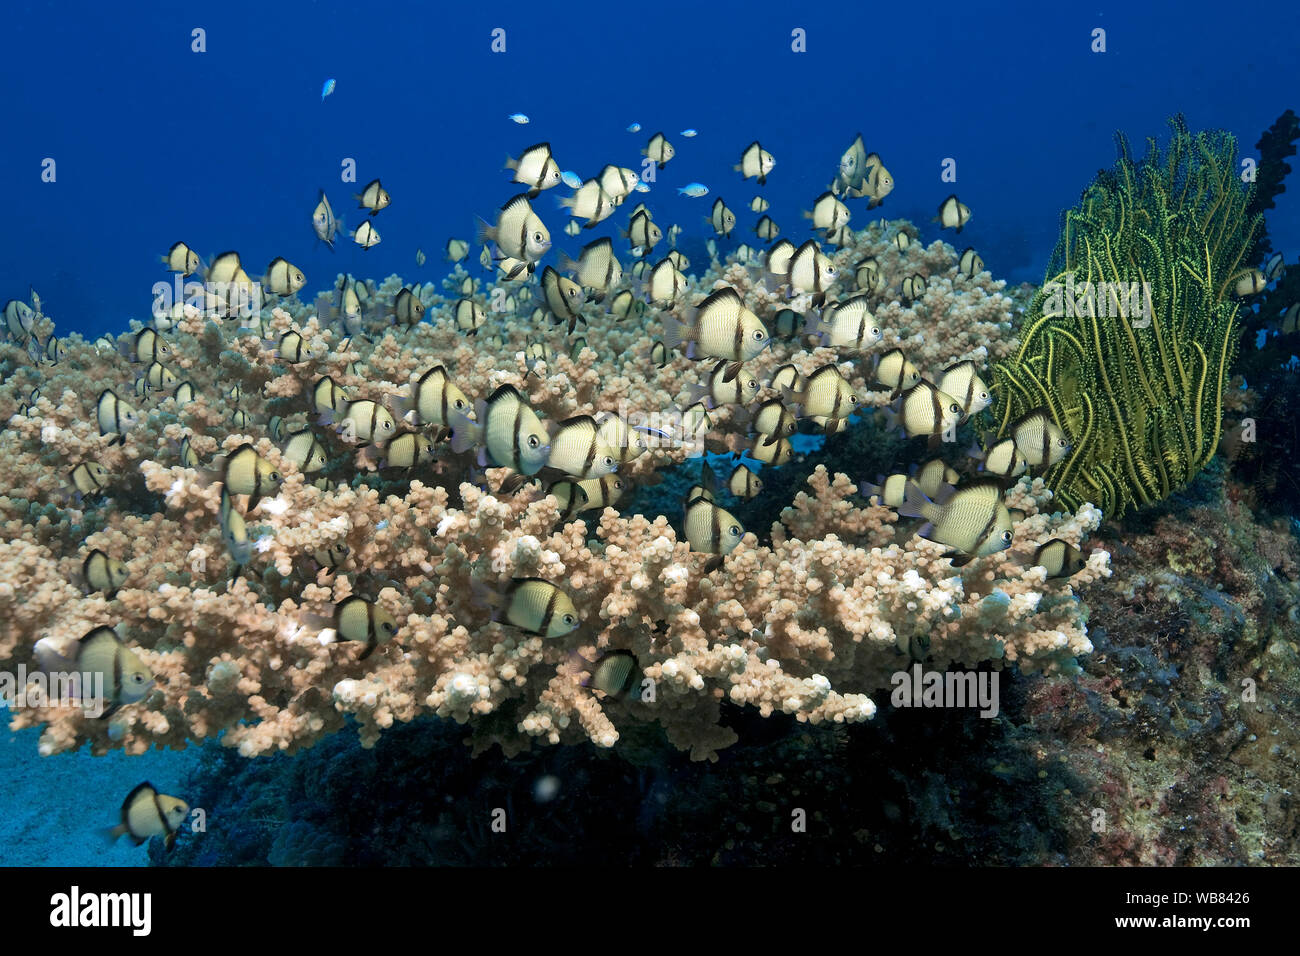 Dascyllus reticolato (Dascyllus reticulatus), crociera su una tavola di corallo, Malapascua, Cebu, Filippine Foto Stock